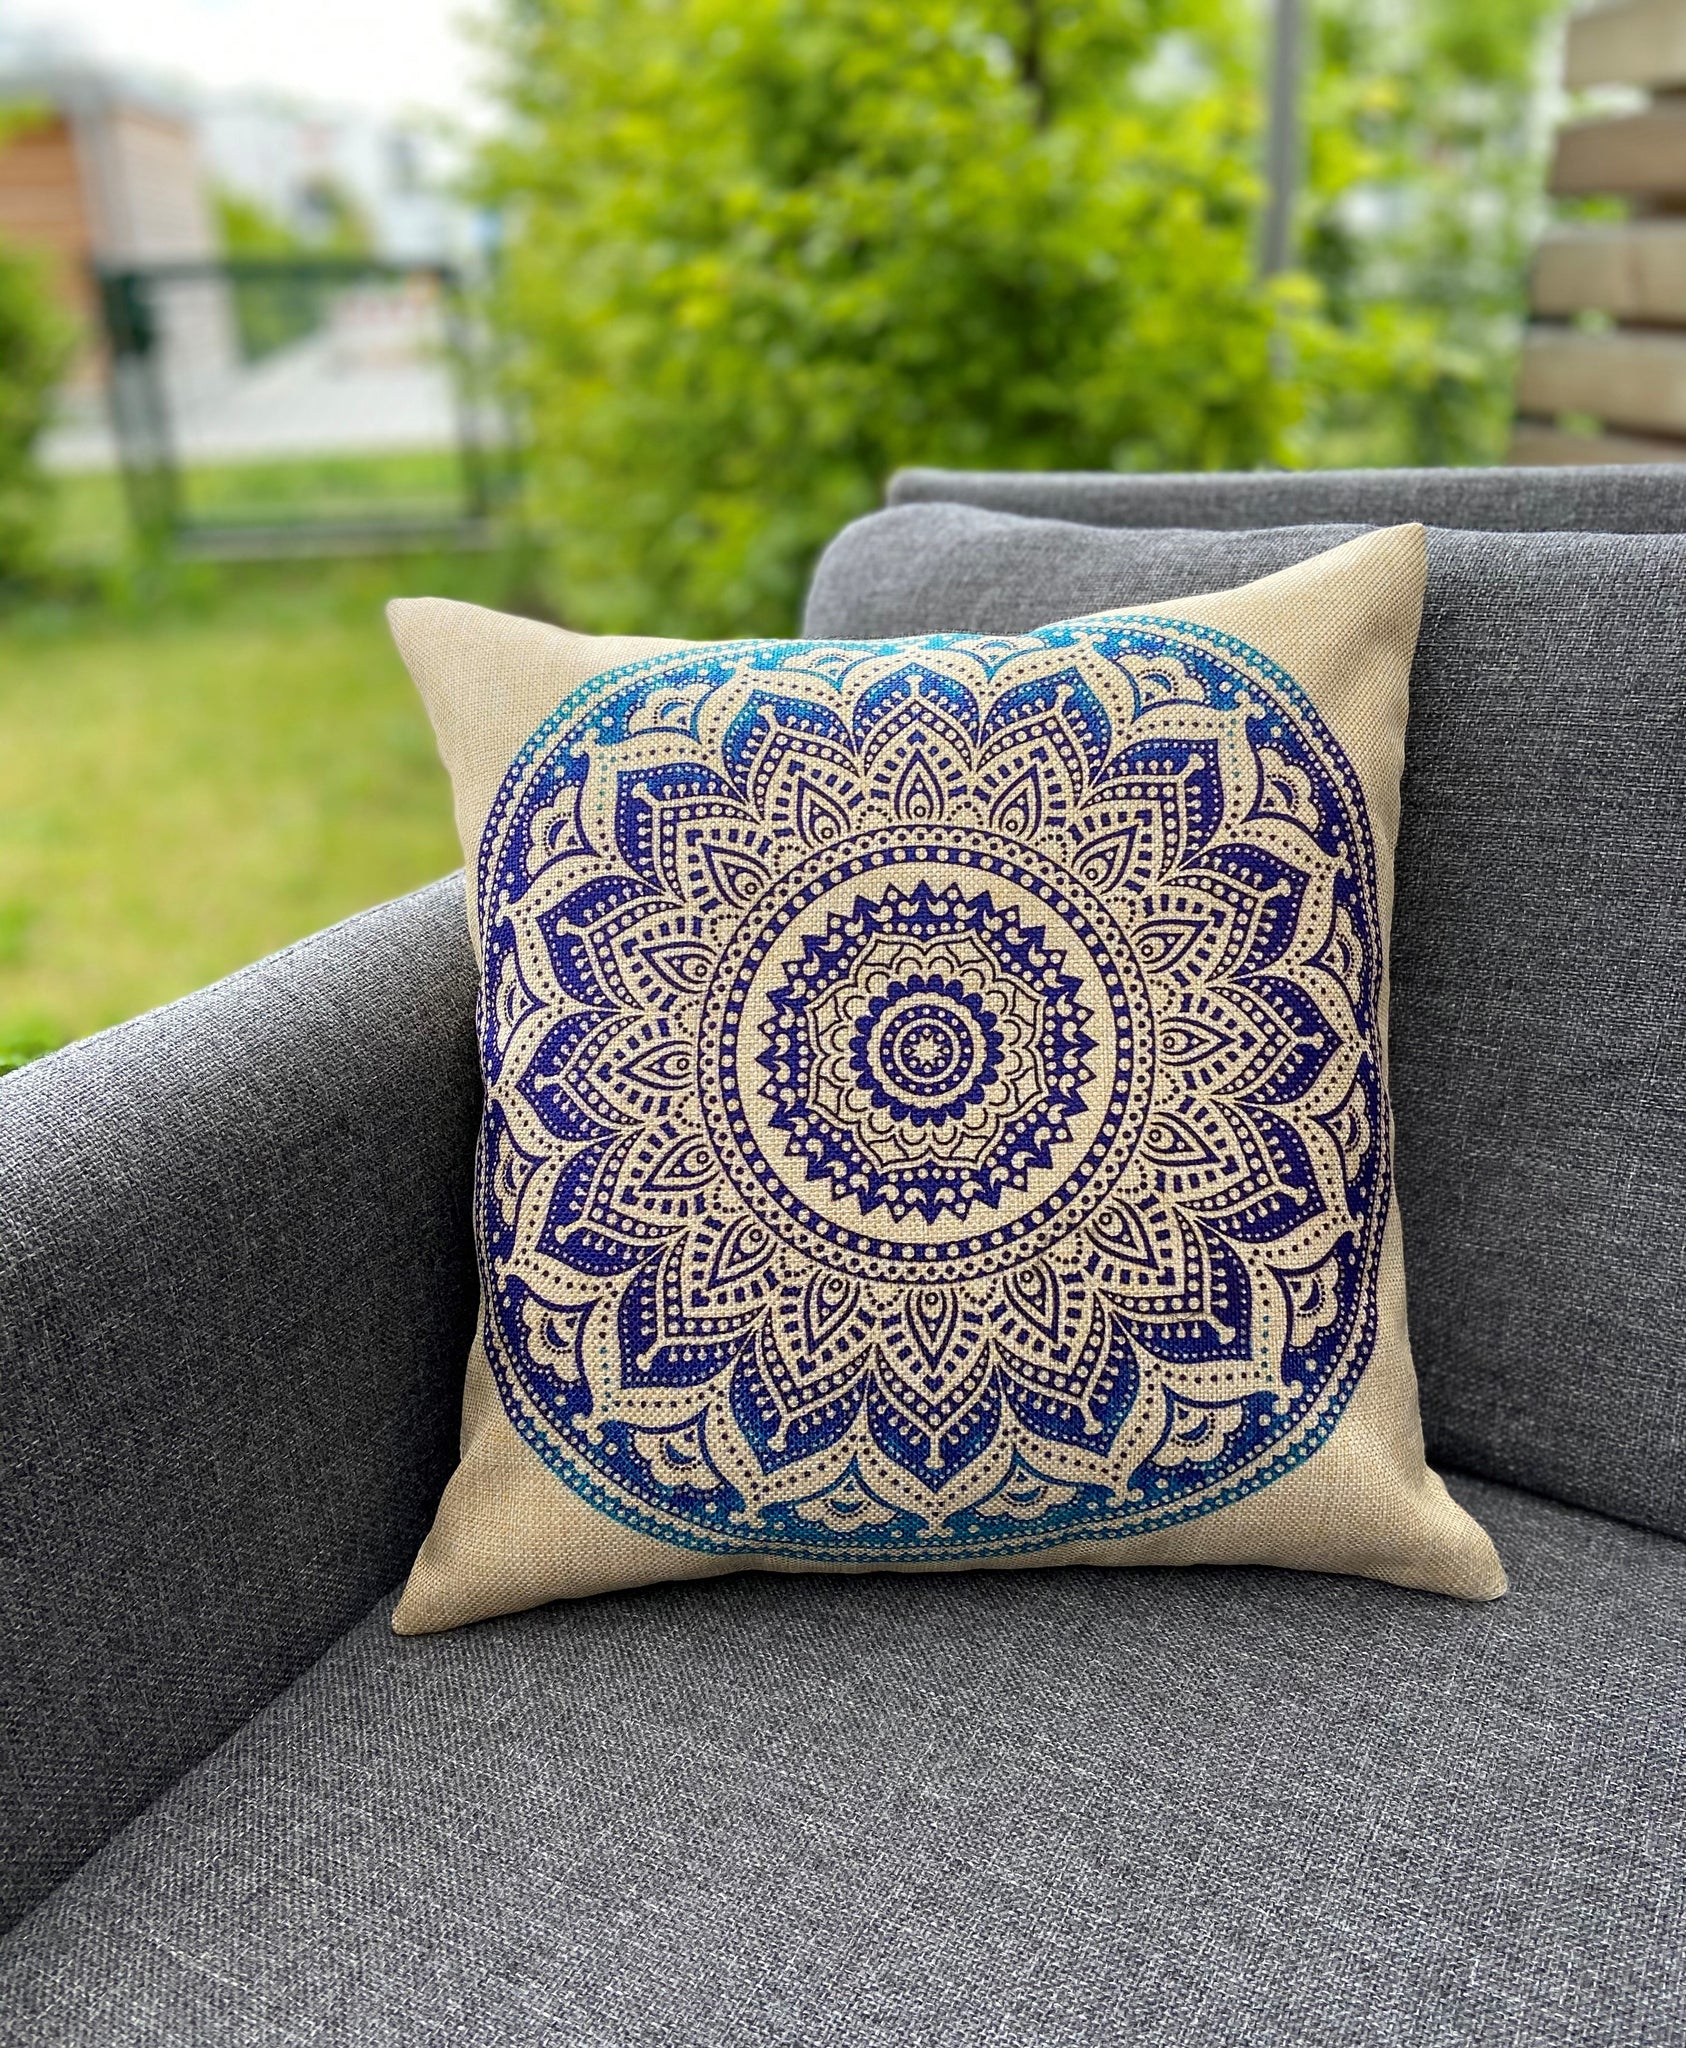 Cushion Cover-Mandala3 in blue